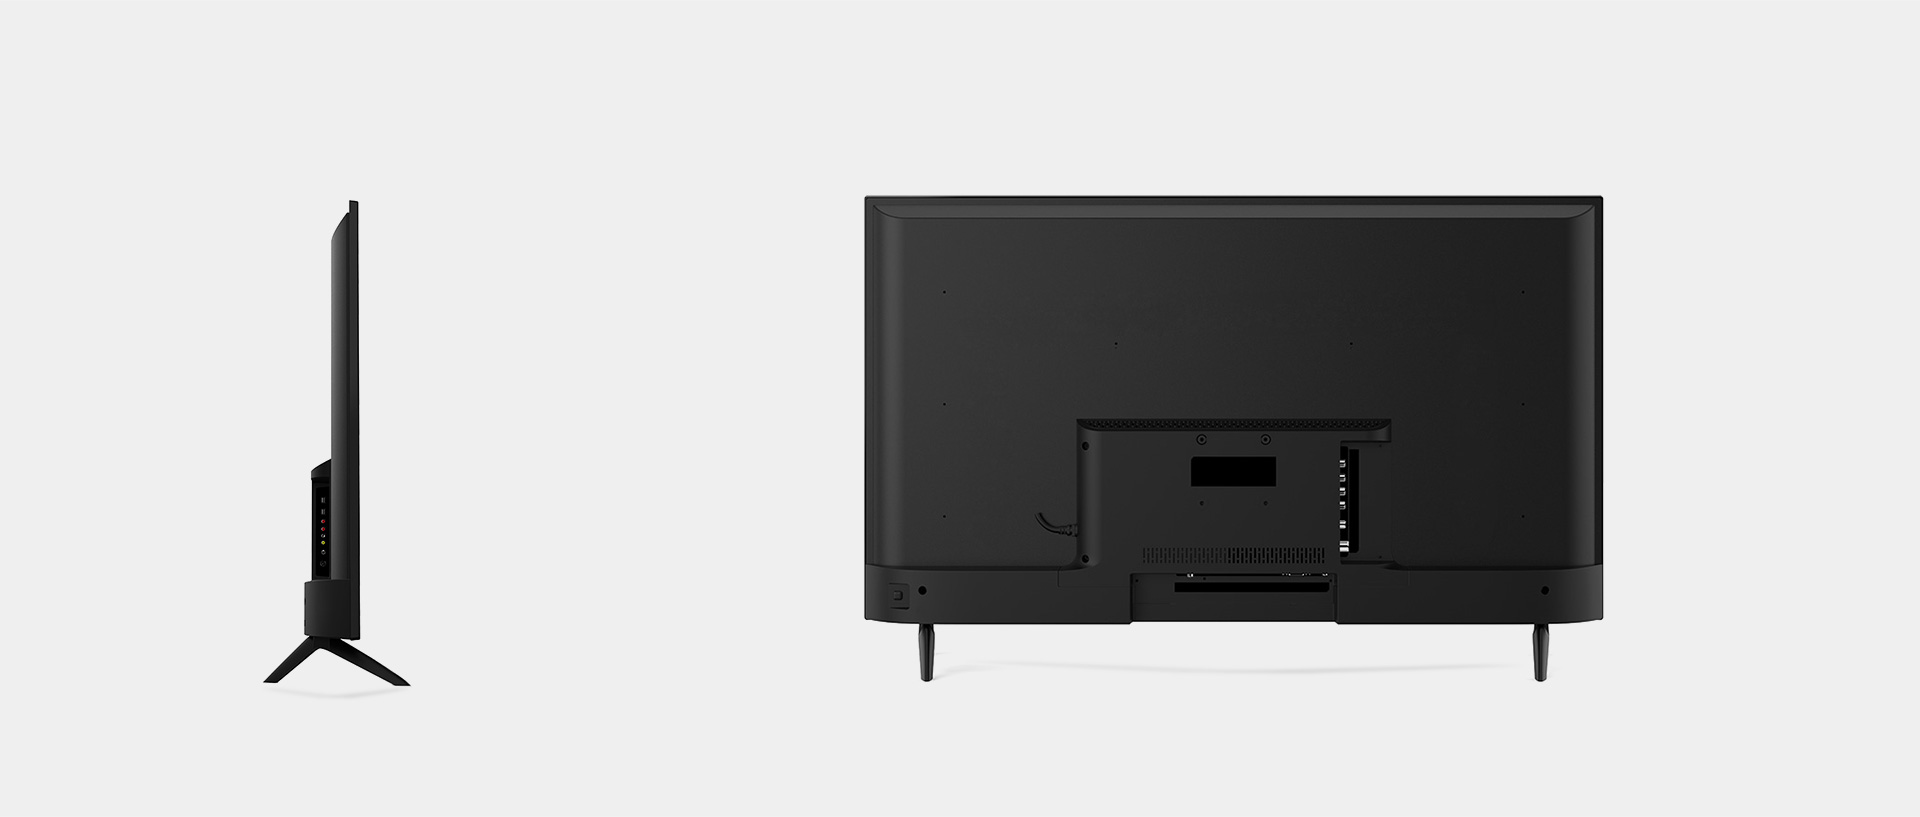 康冠D1系列液晶电视产品特性：OD22超薄设计，圆润简洁背板；极窄边框，舒适观影体验(多色可选)；月牙底座，精致美观(多种底座可选)。